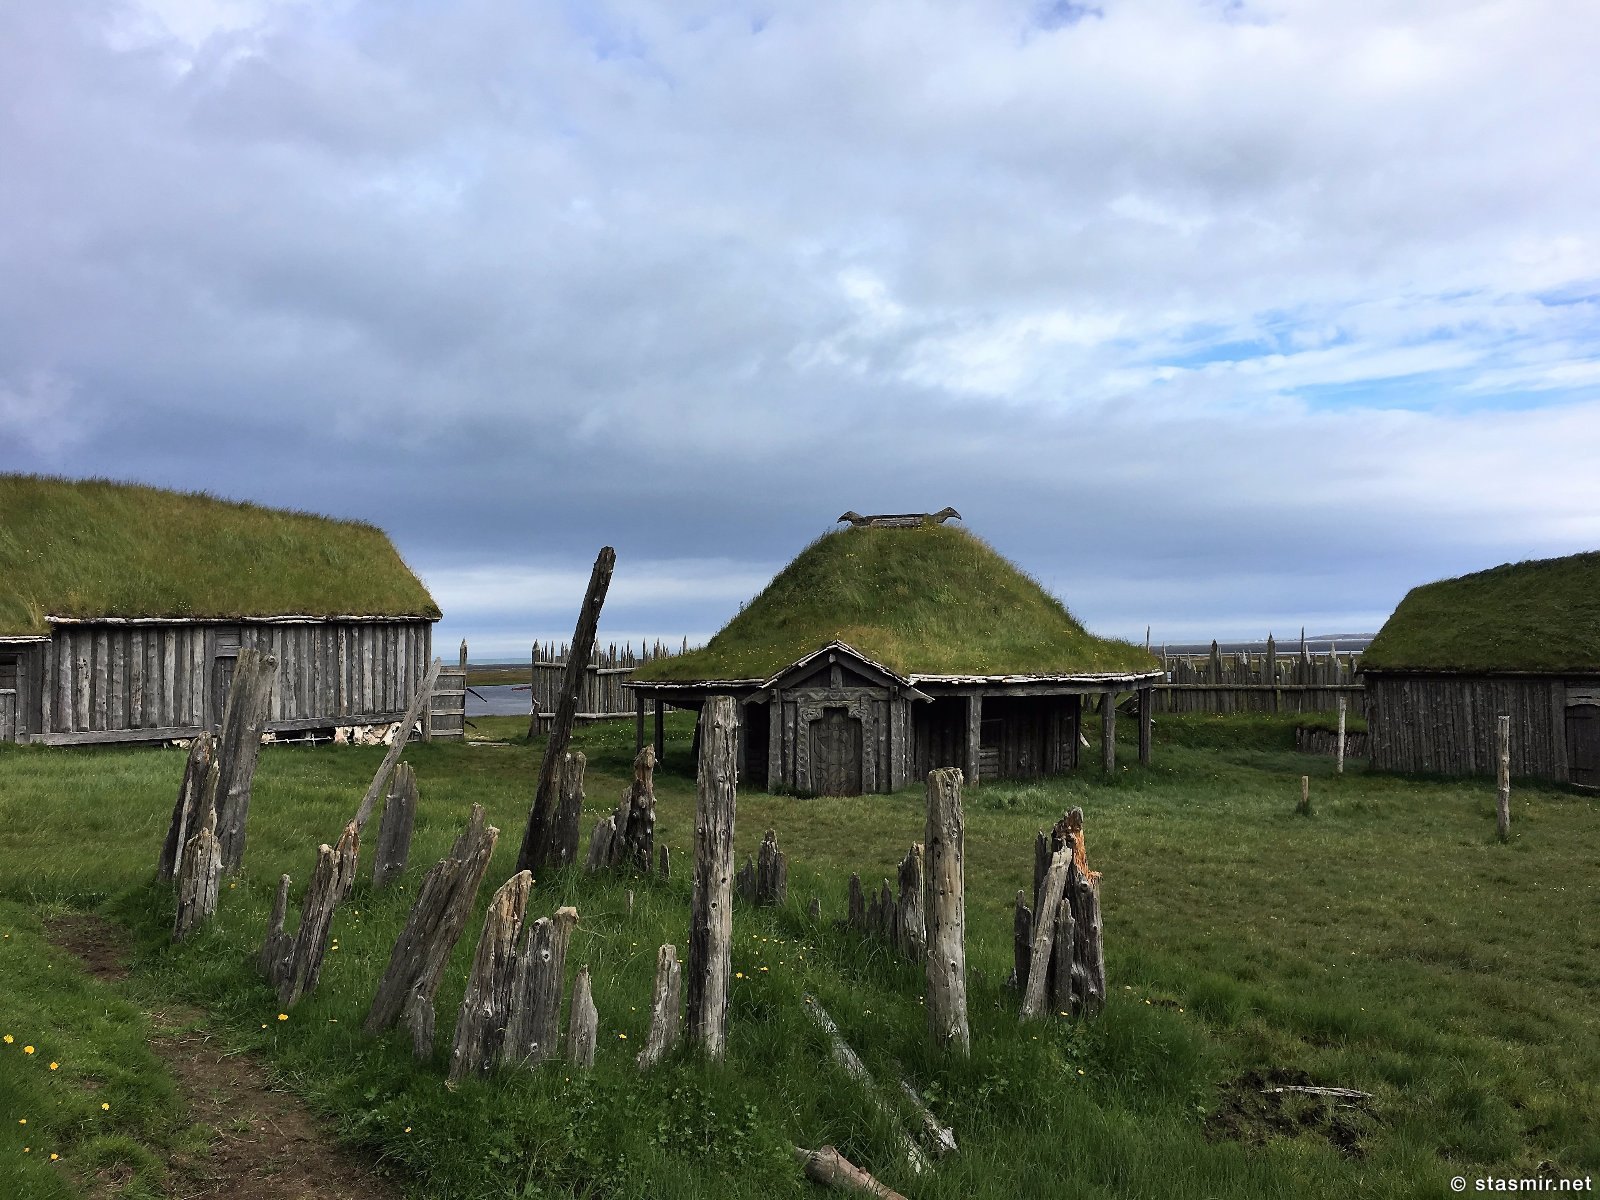 голливудская деревня викингов в Исландии, фото Стасмир, photo Stasmir, регион Восточная Исландия, муляж деревни викингов в Исландии